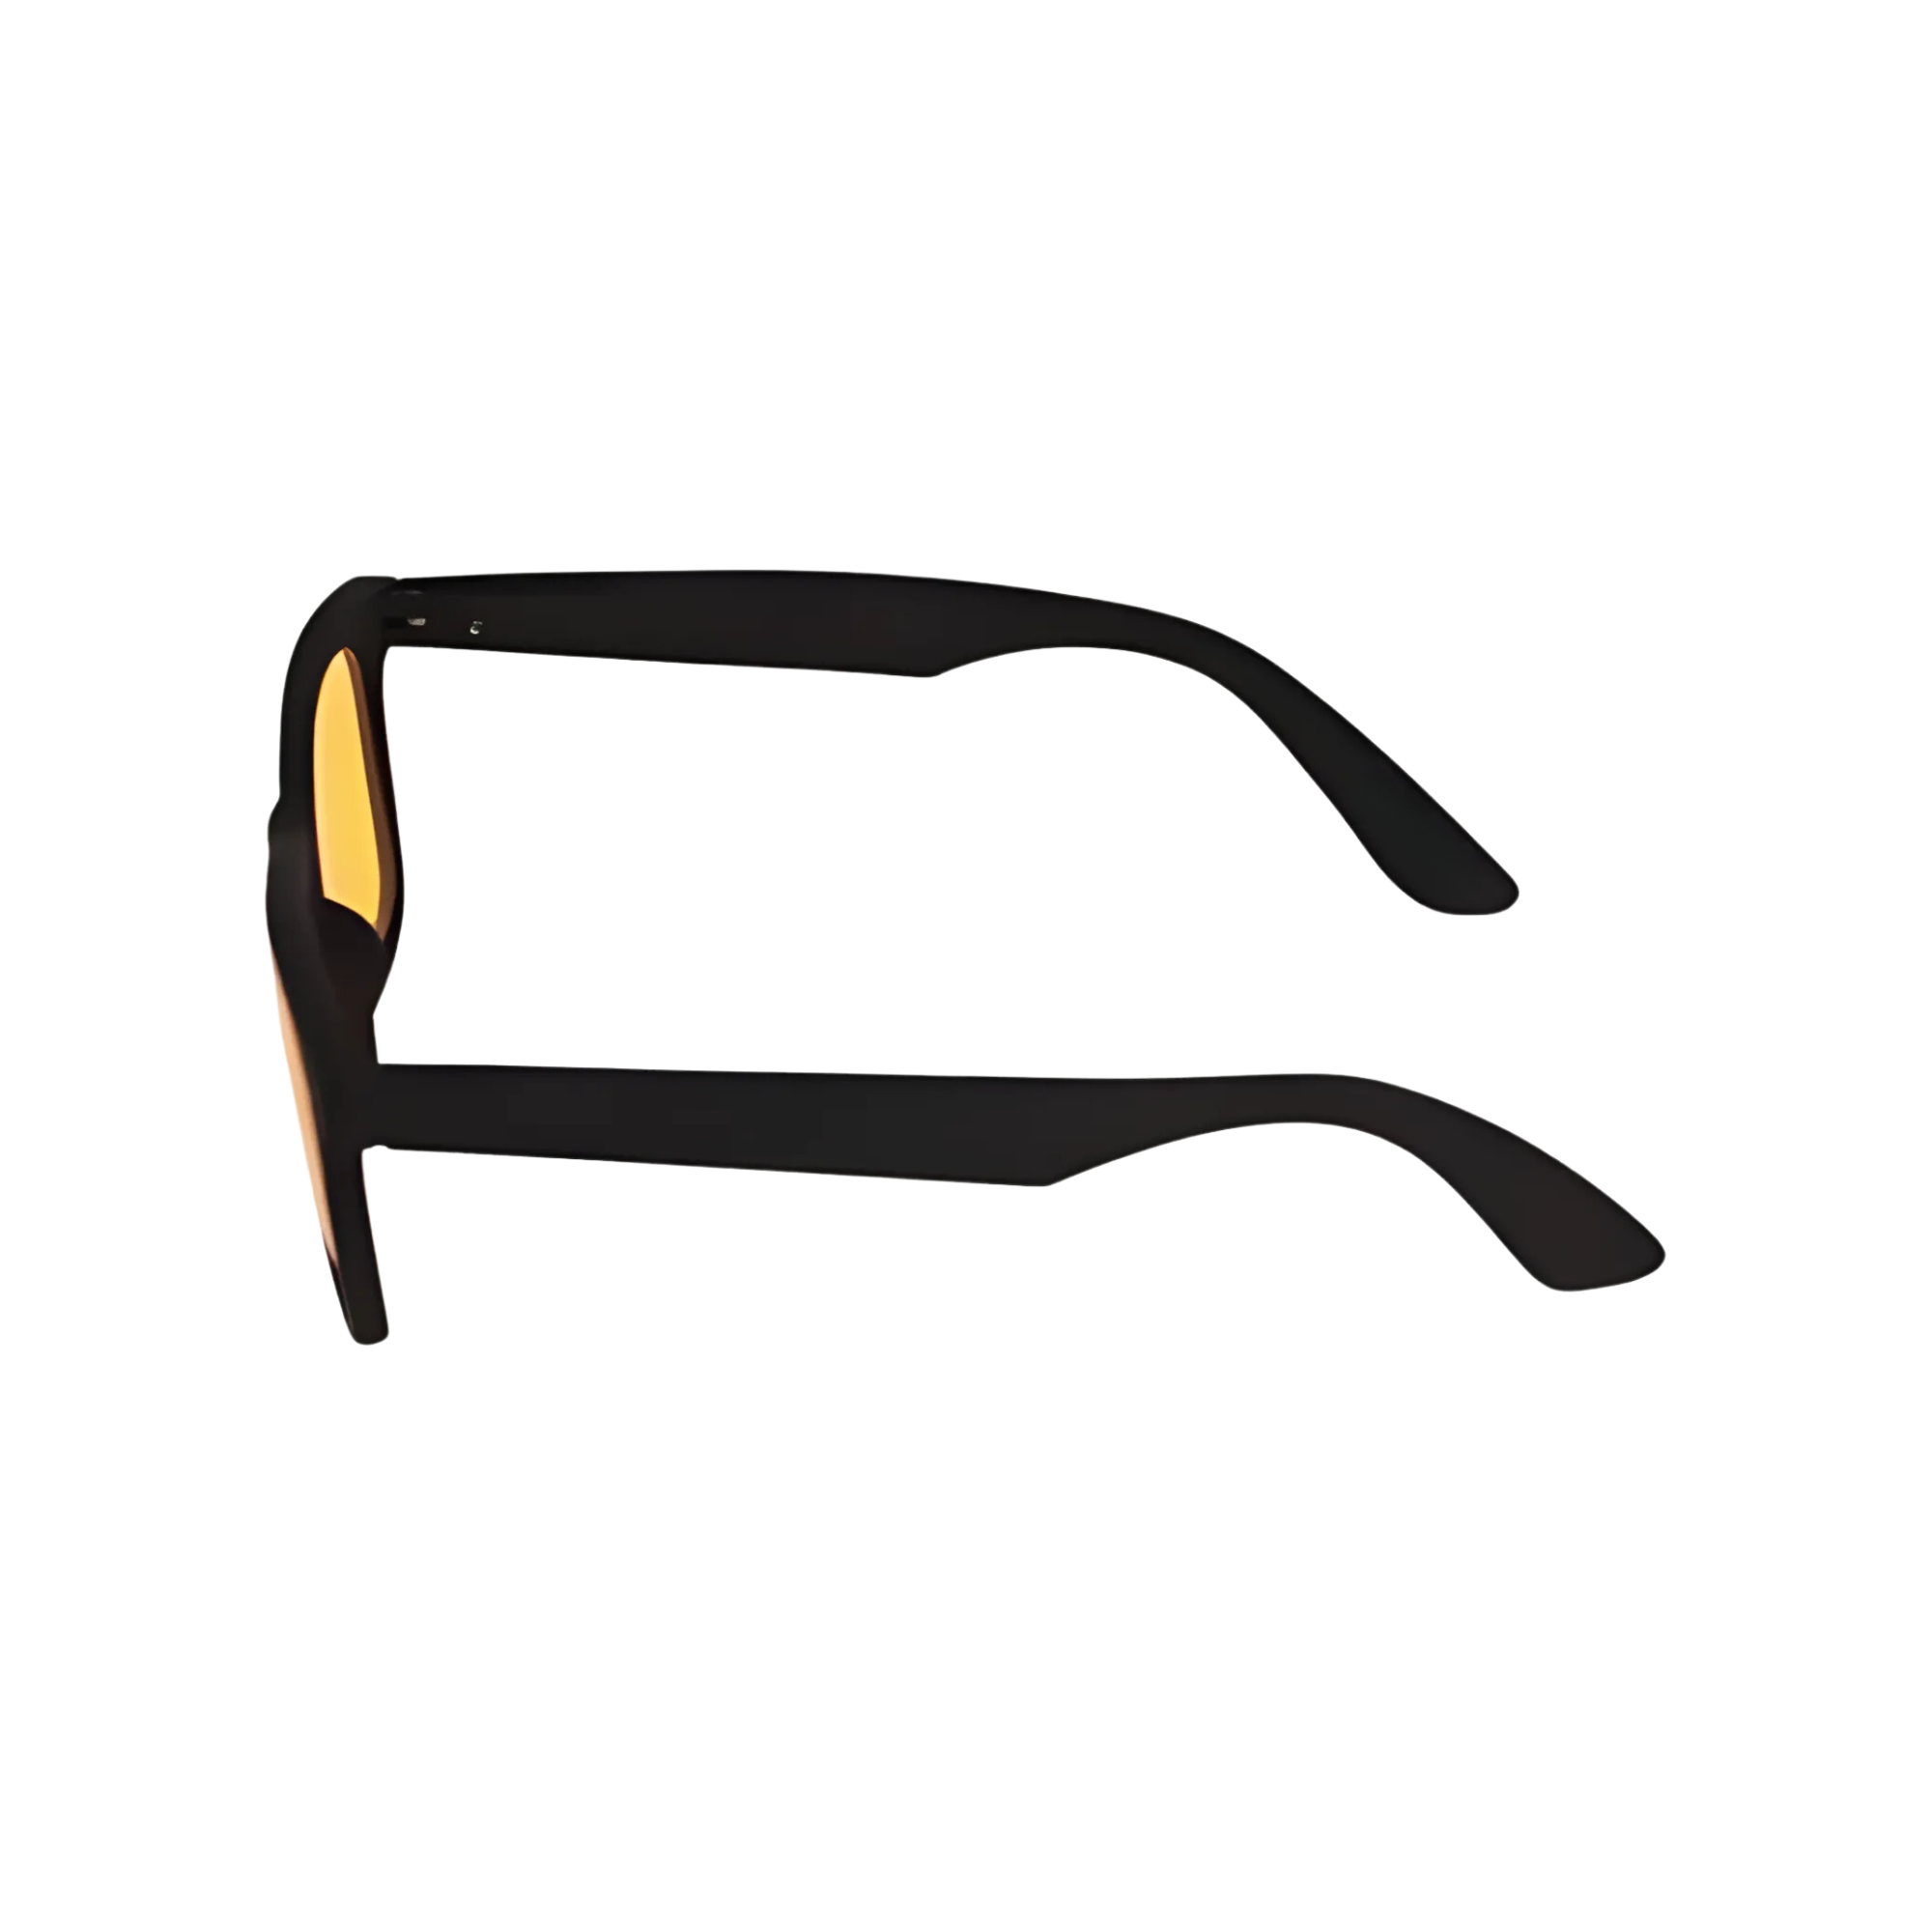 Klassic Series Polarized Wayfarer Night Driving Glasses For Men & Women - (Matte Black Frame Yellow Lenses)